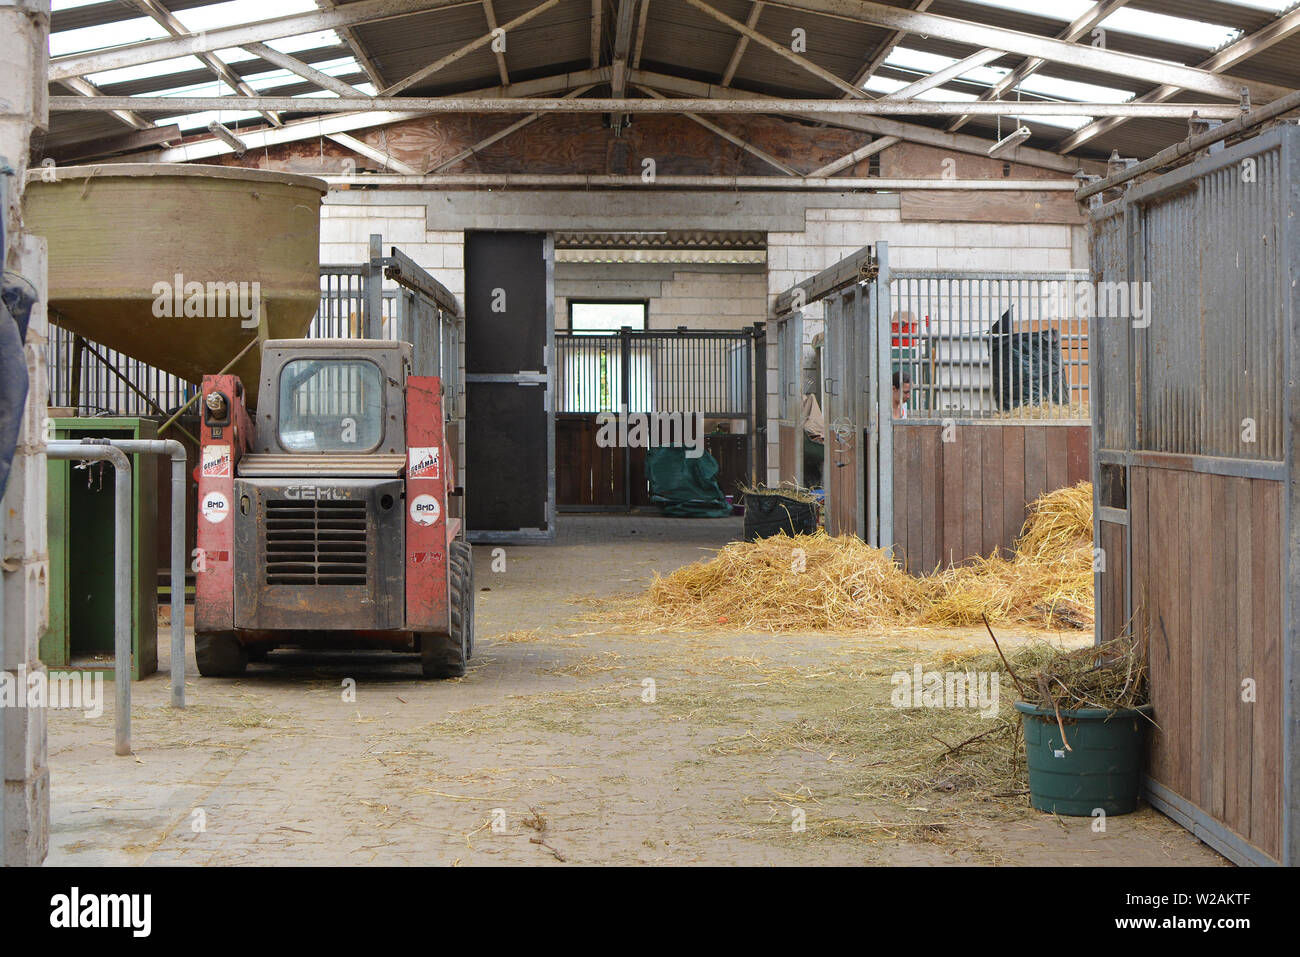 Allemagne - Juillet 2019 : l'intérieur d'animal stable avec des stalles et du foin pour nourrir les animaux Banque D'Images